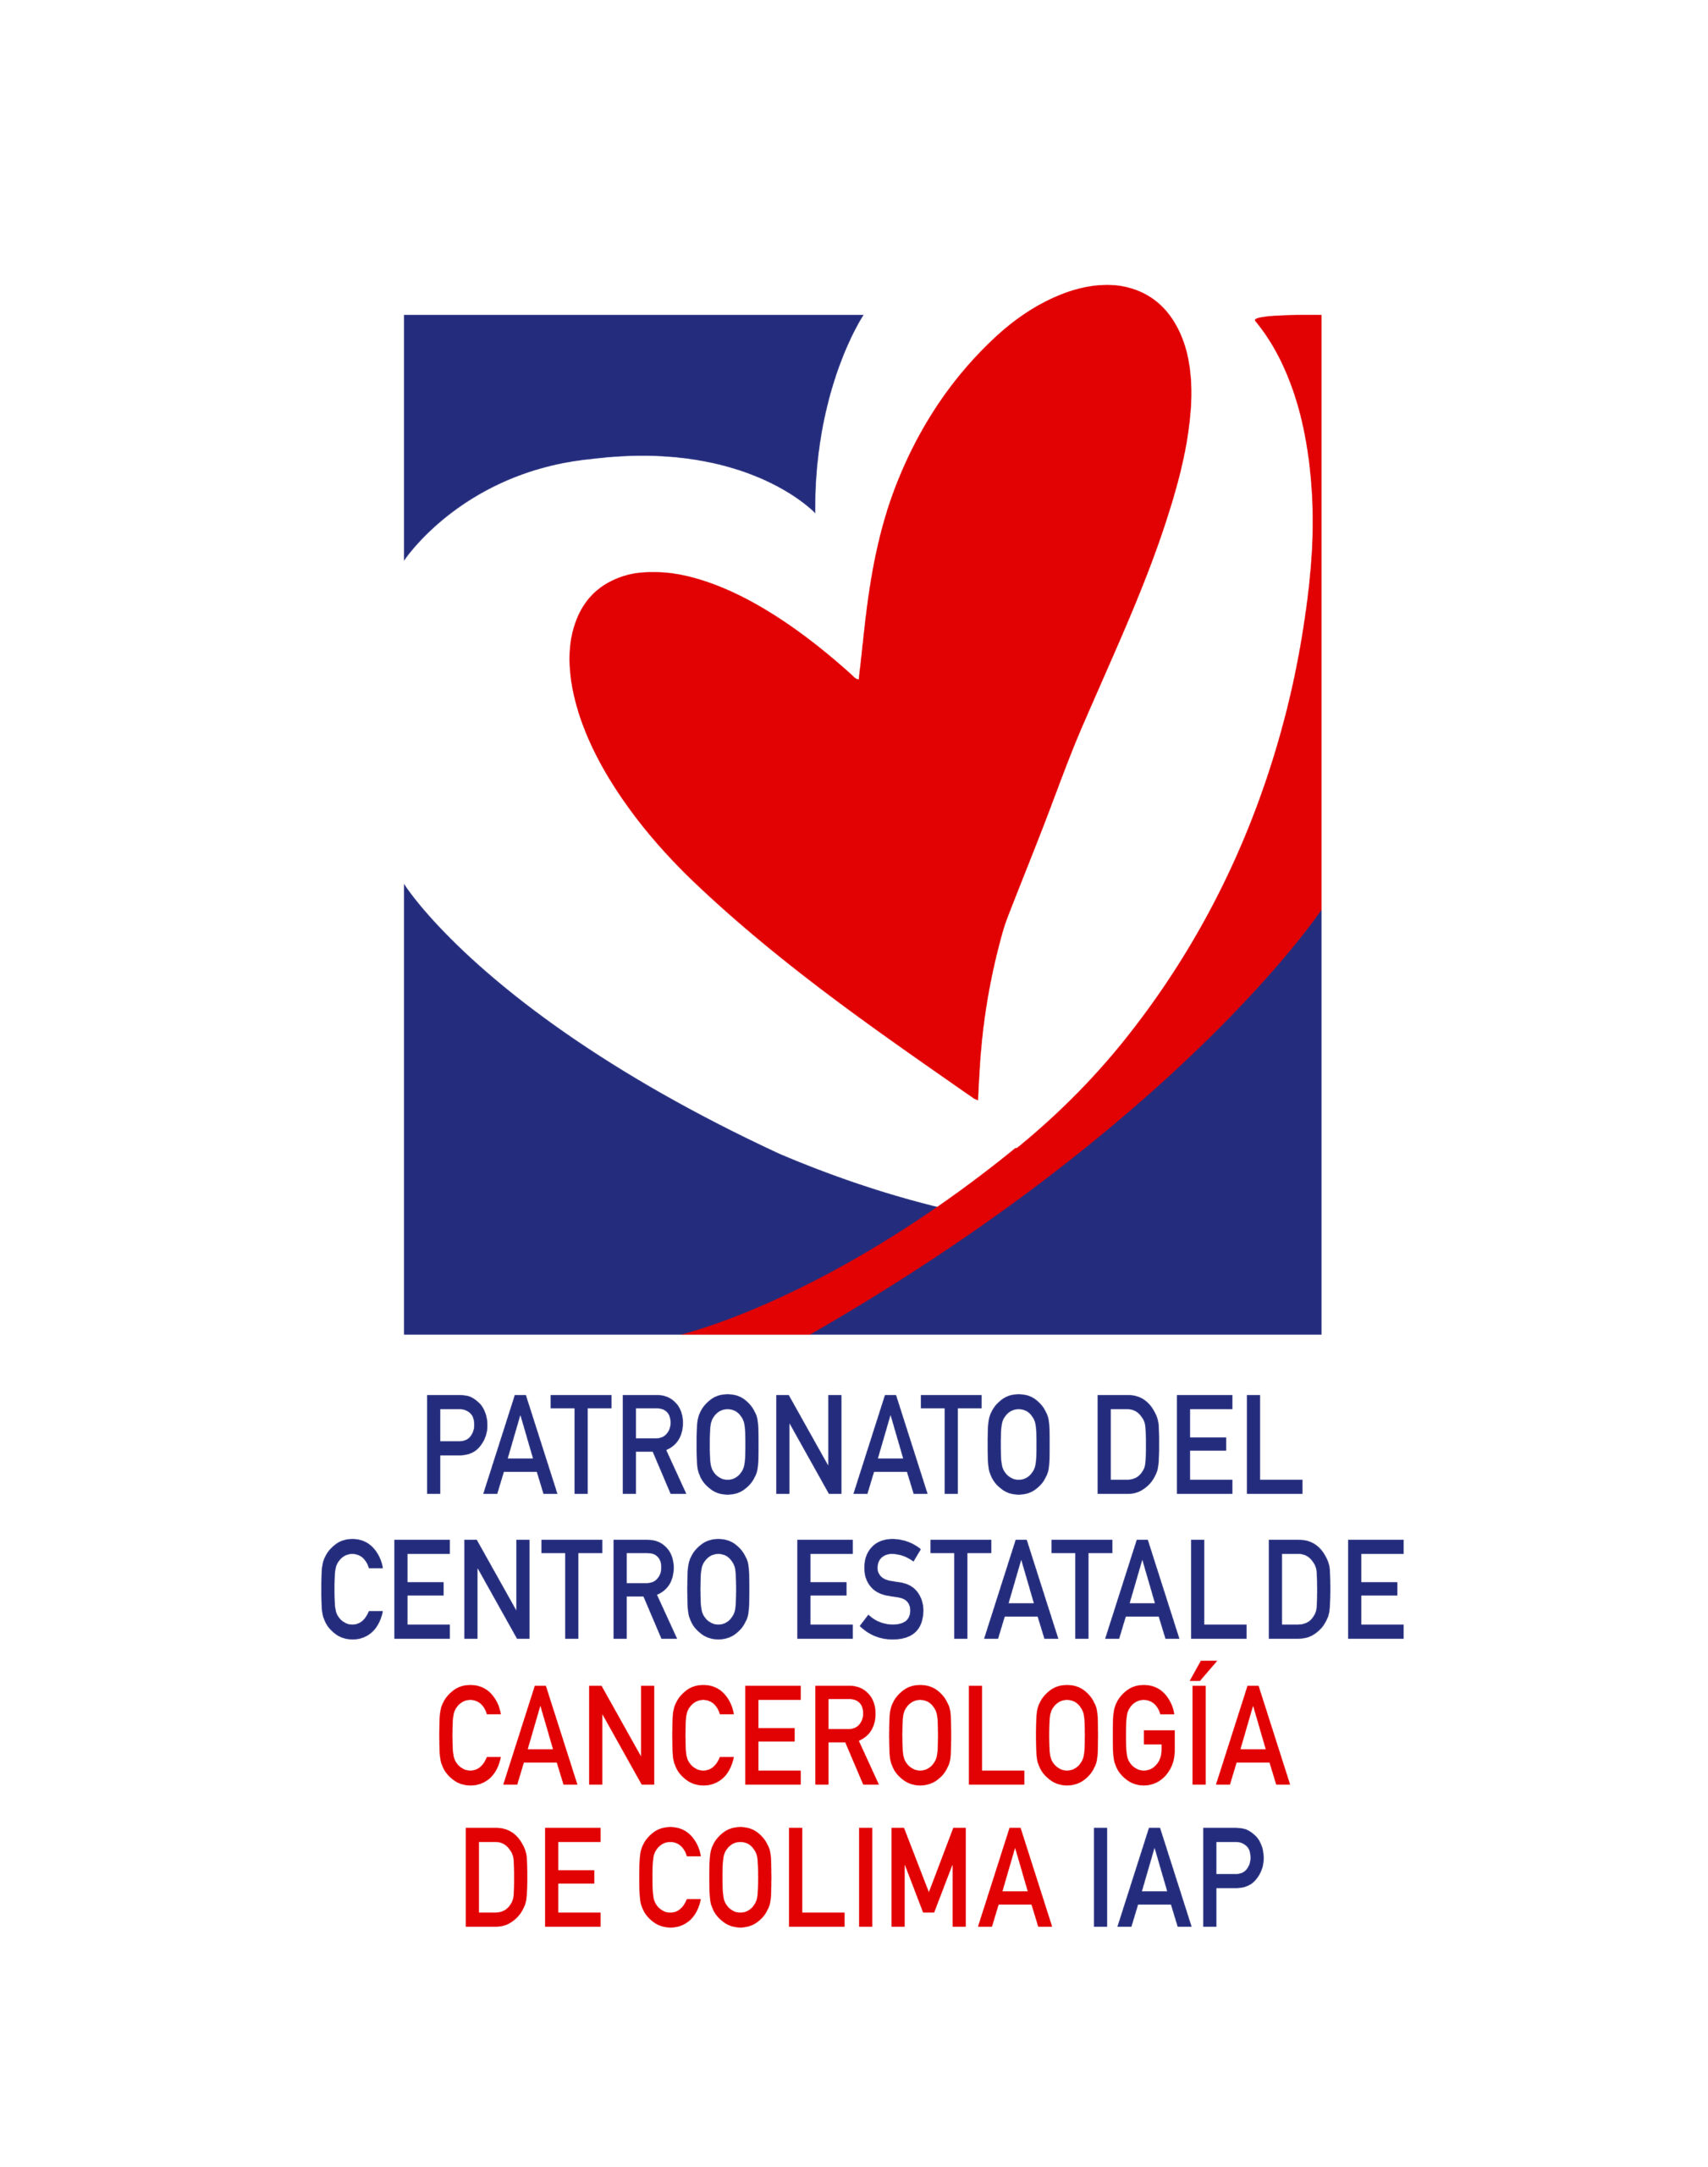 Patronato del Centro Estatal de Cancerología de Colima, I.A.P.